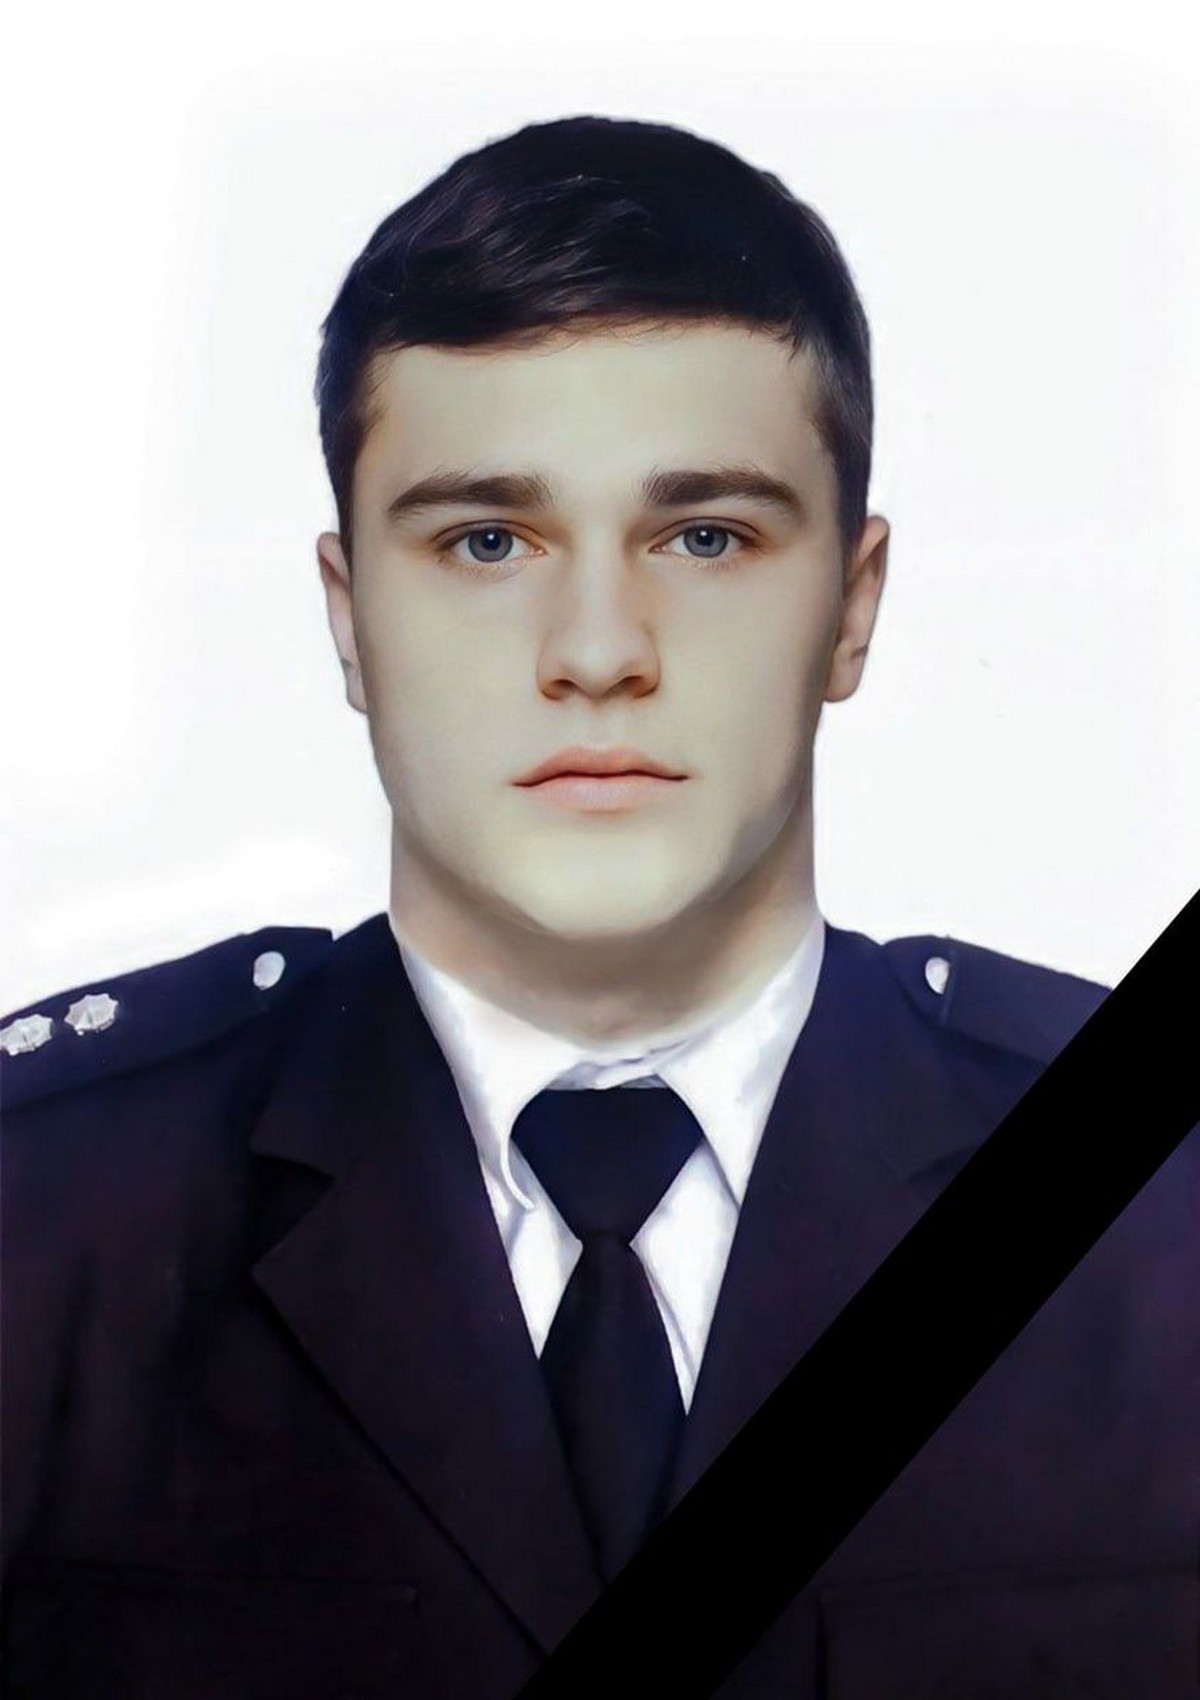 Відео моменту ДТП, у якій загинув 22-річний нікополець, що працював у поліції Києва